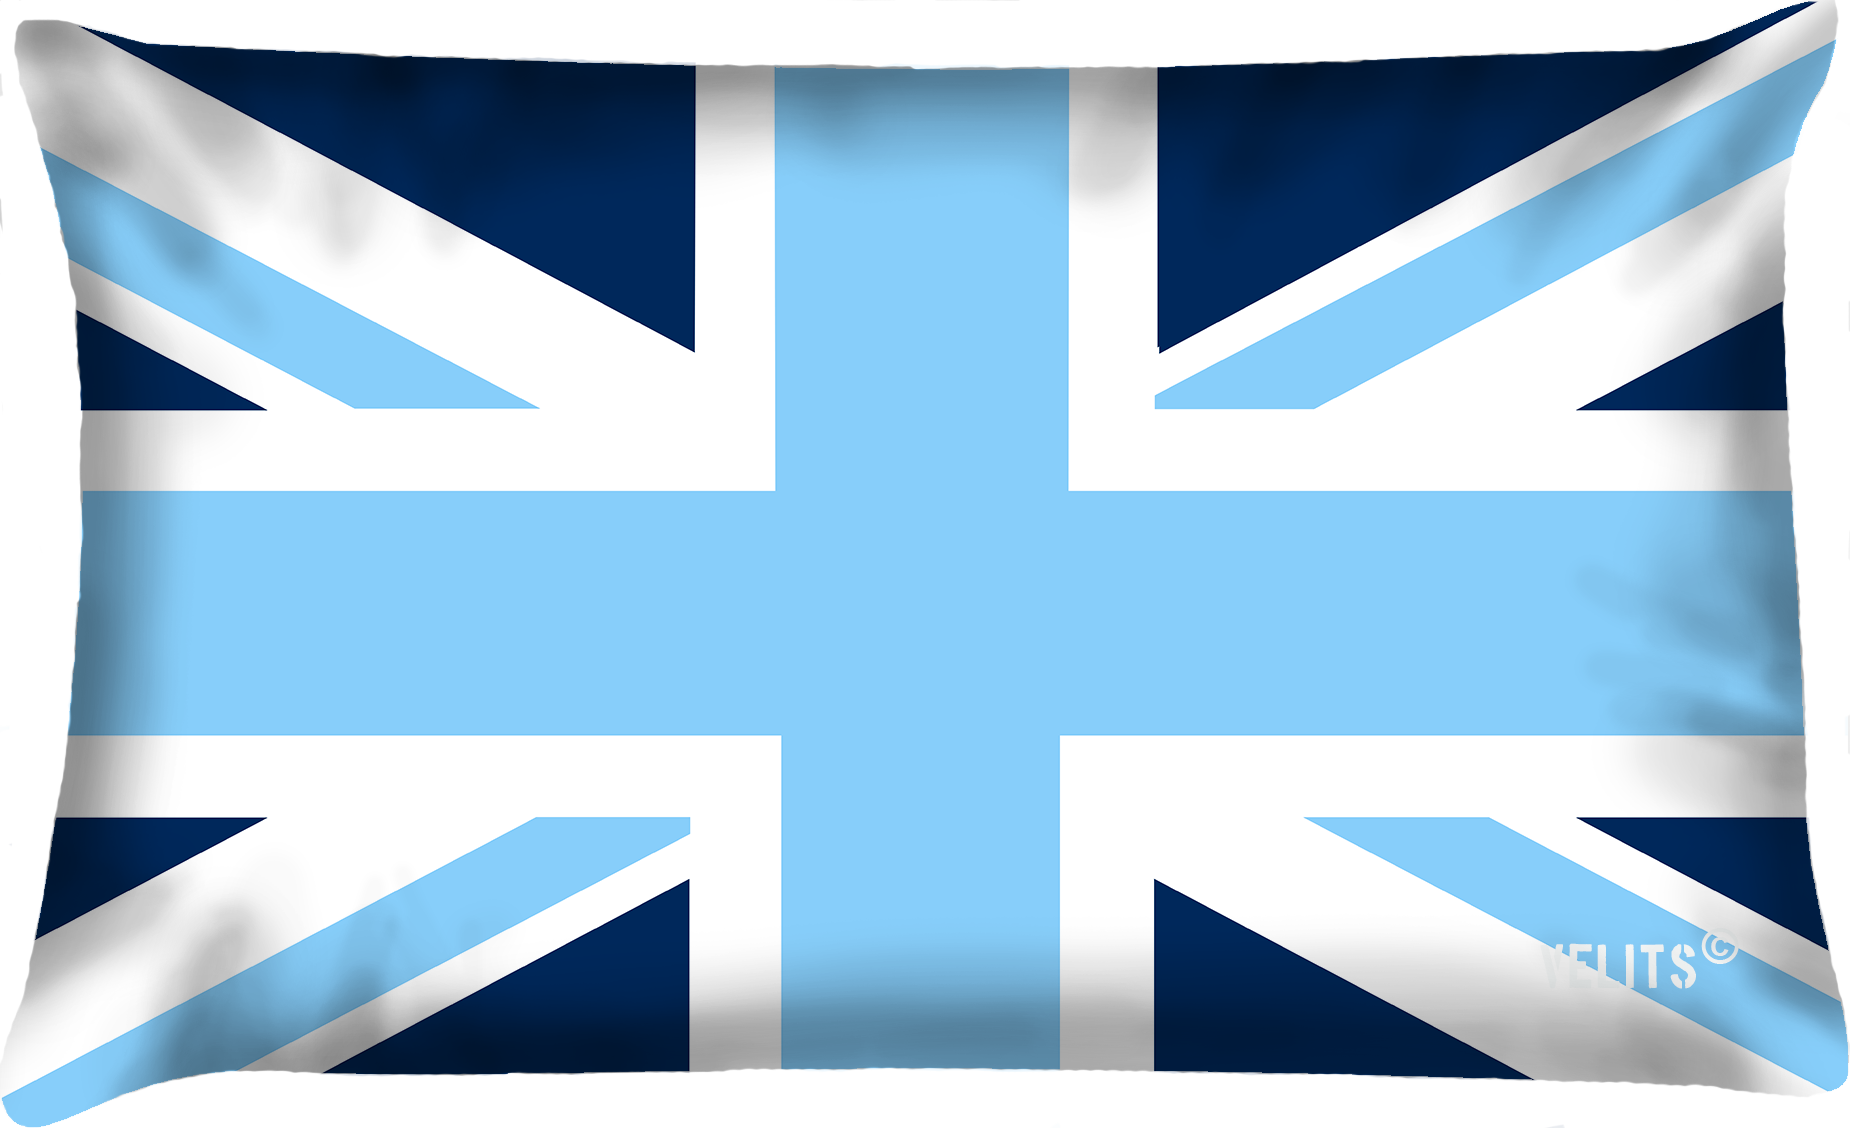 Buitenkussen Blauw Bloed Engelse vlag in blauw en wit - Vreeken